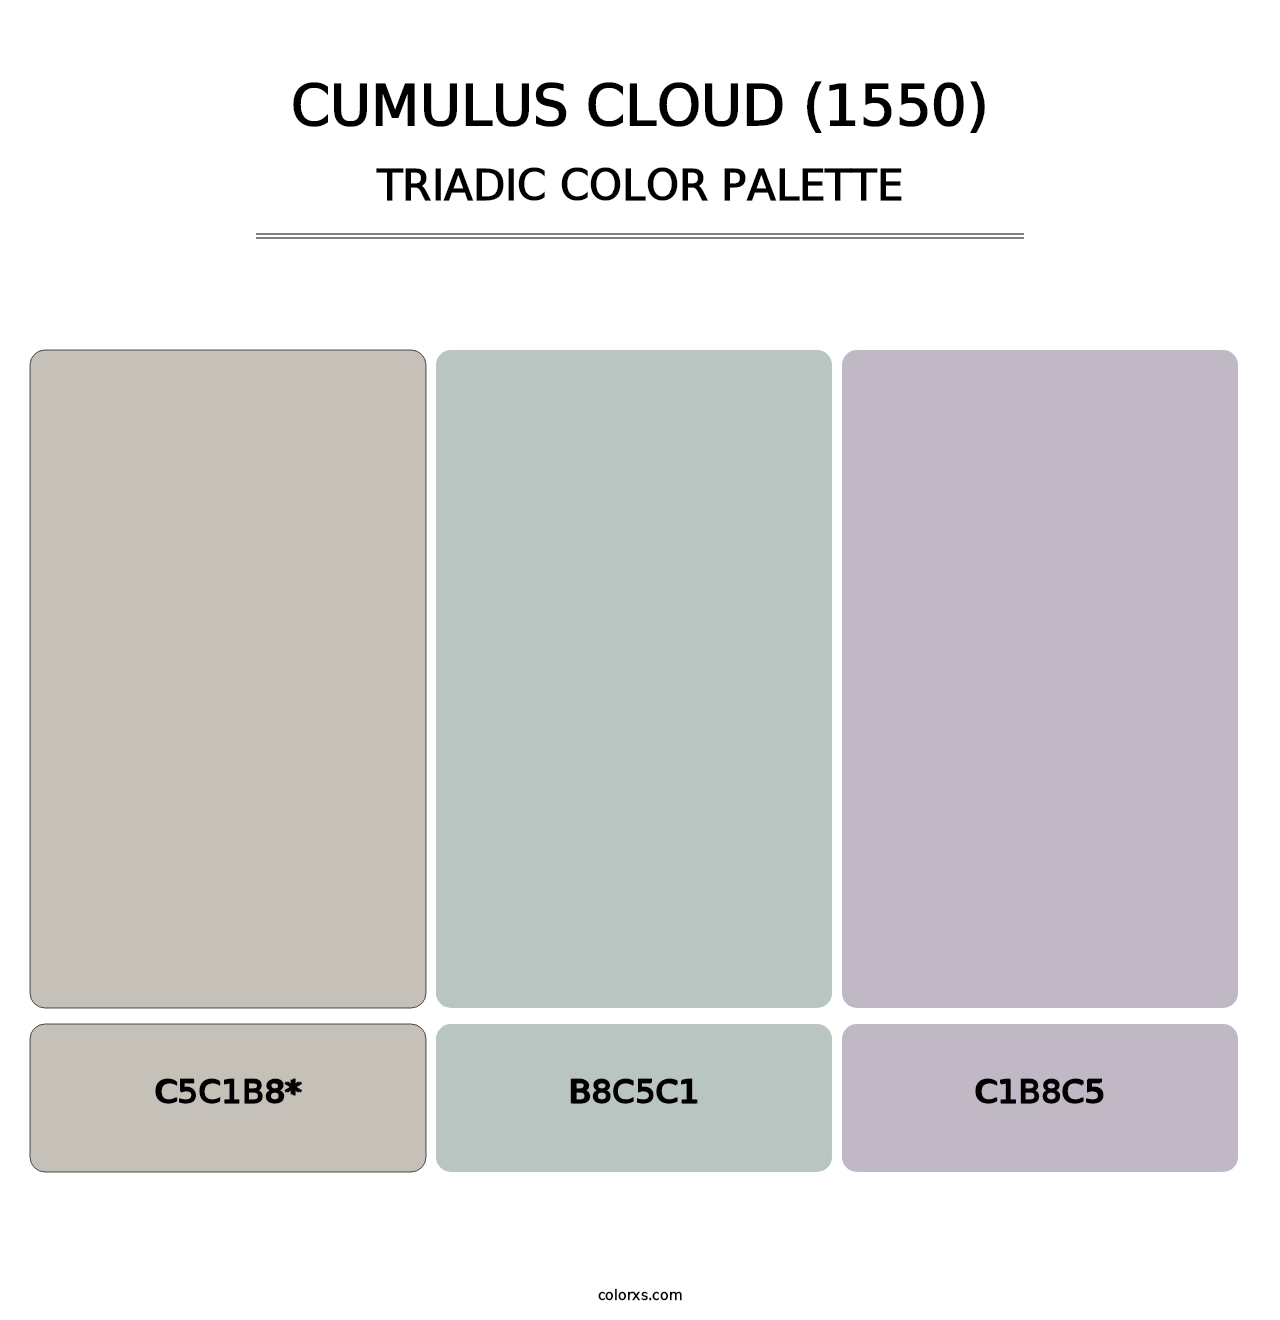 Cumulus Cloud (1550) - Triadic Color Palette